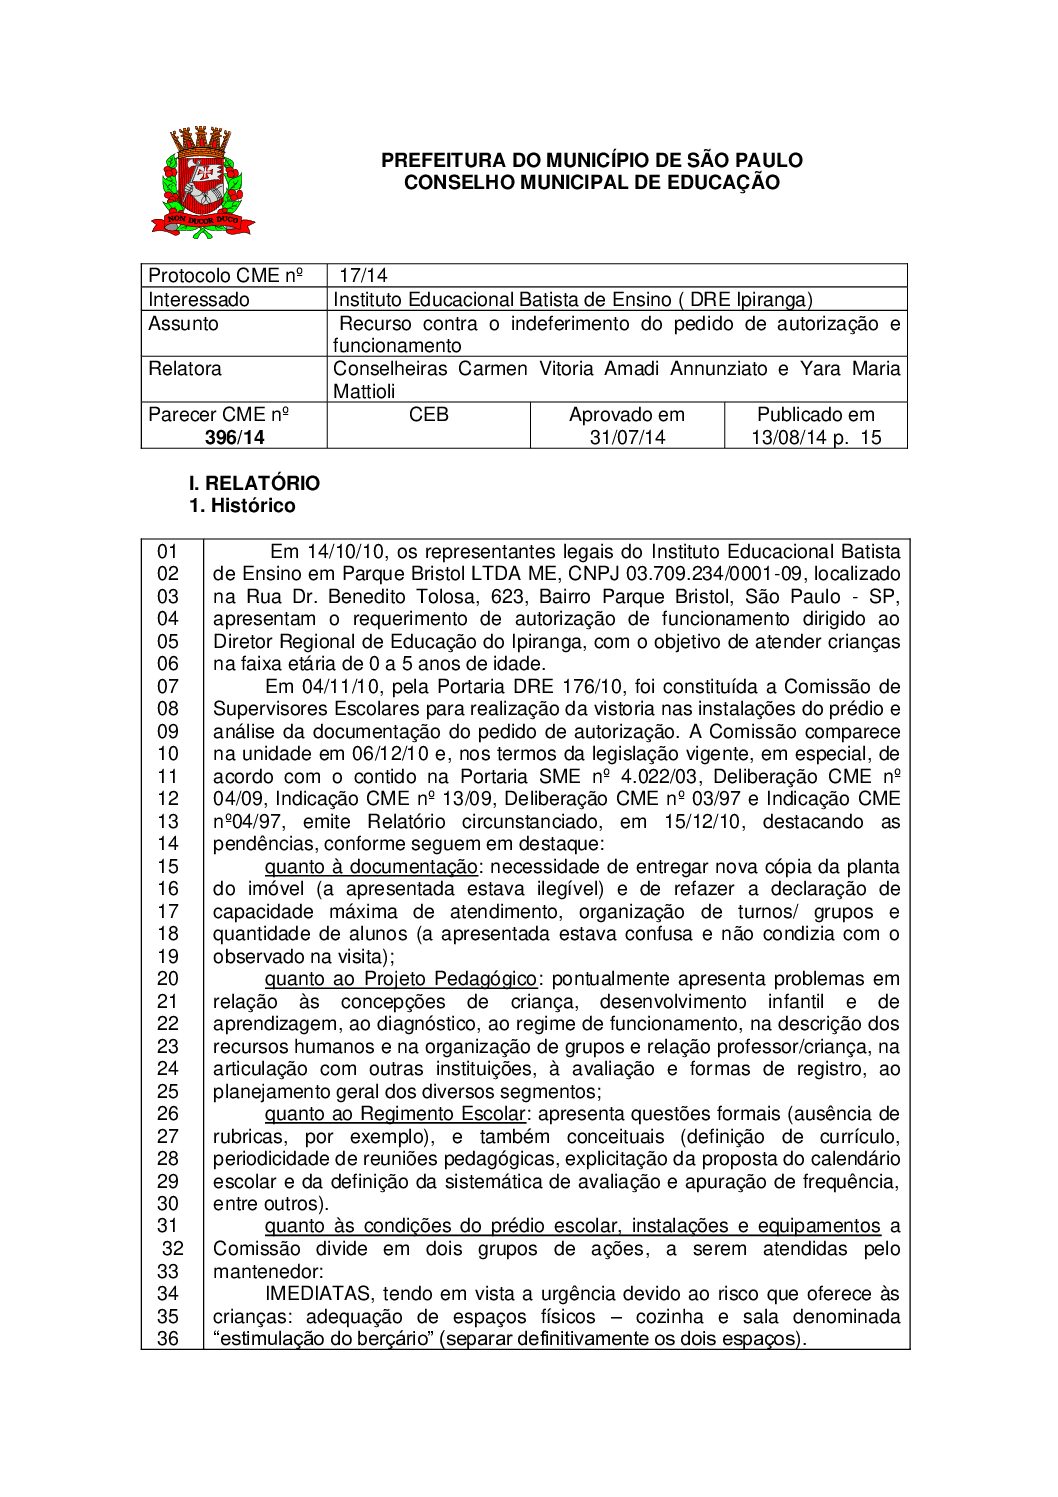 Parecer CME nº 396/2014 - Instituto Educacional Batista de Ensino (DRE Ipiranga) - Recurso contra o indeferimento do pedido de autorização e funcionamento